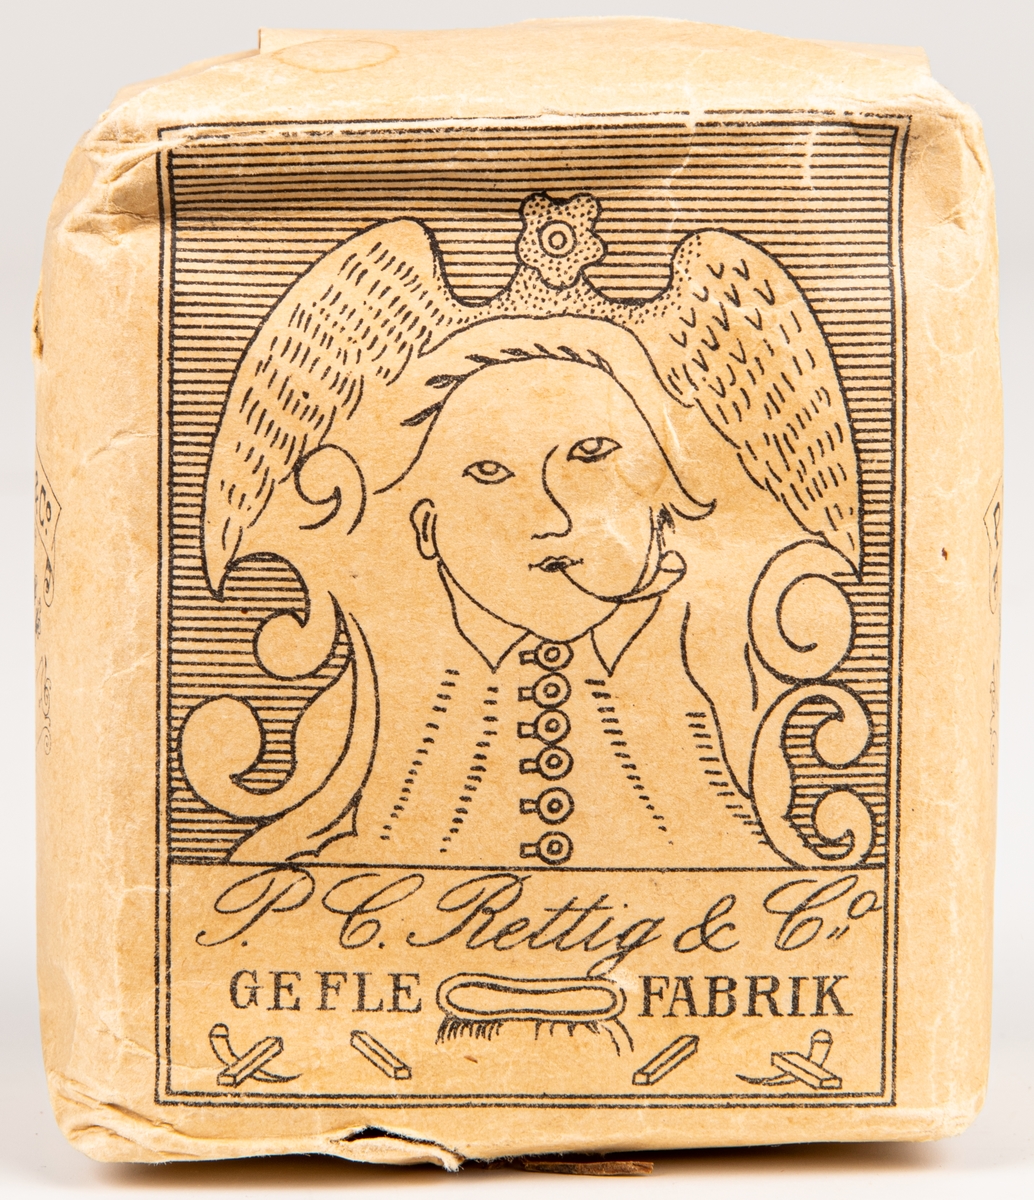 Tobakspaket, av märket "Proberare", från Rettigs fabrik i Gefle.
Bild av stiliserad mänsklig figur med liten pipa i munnen.